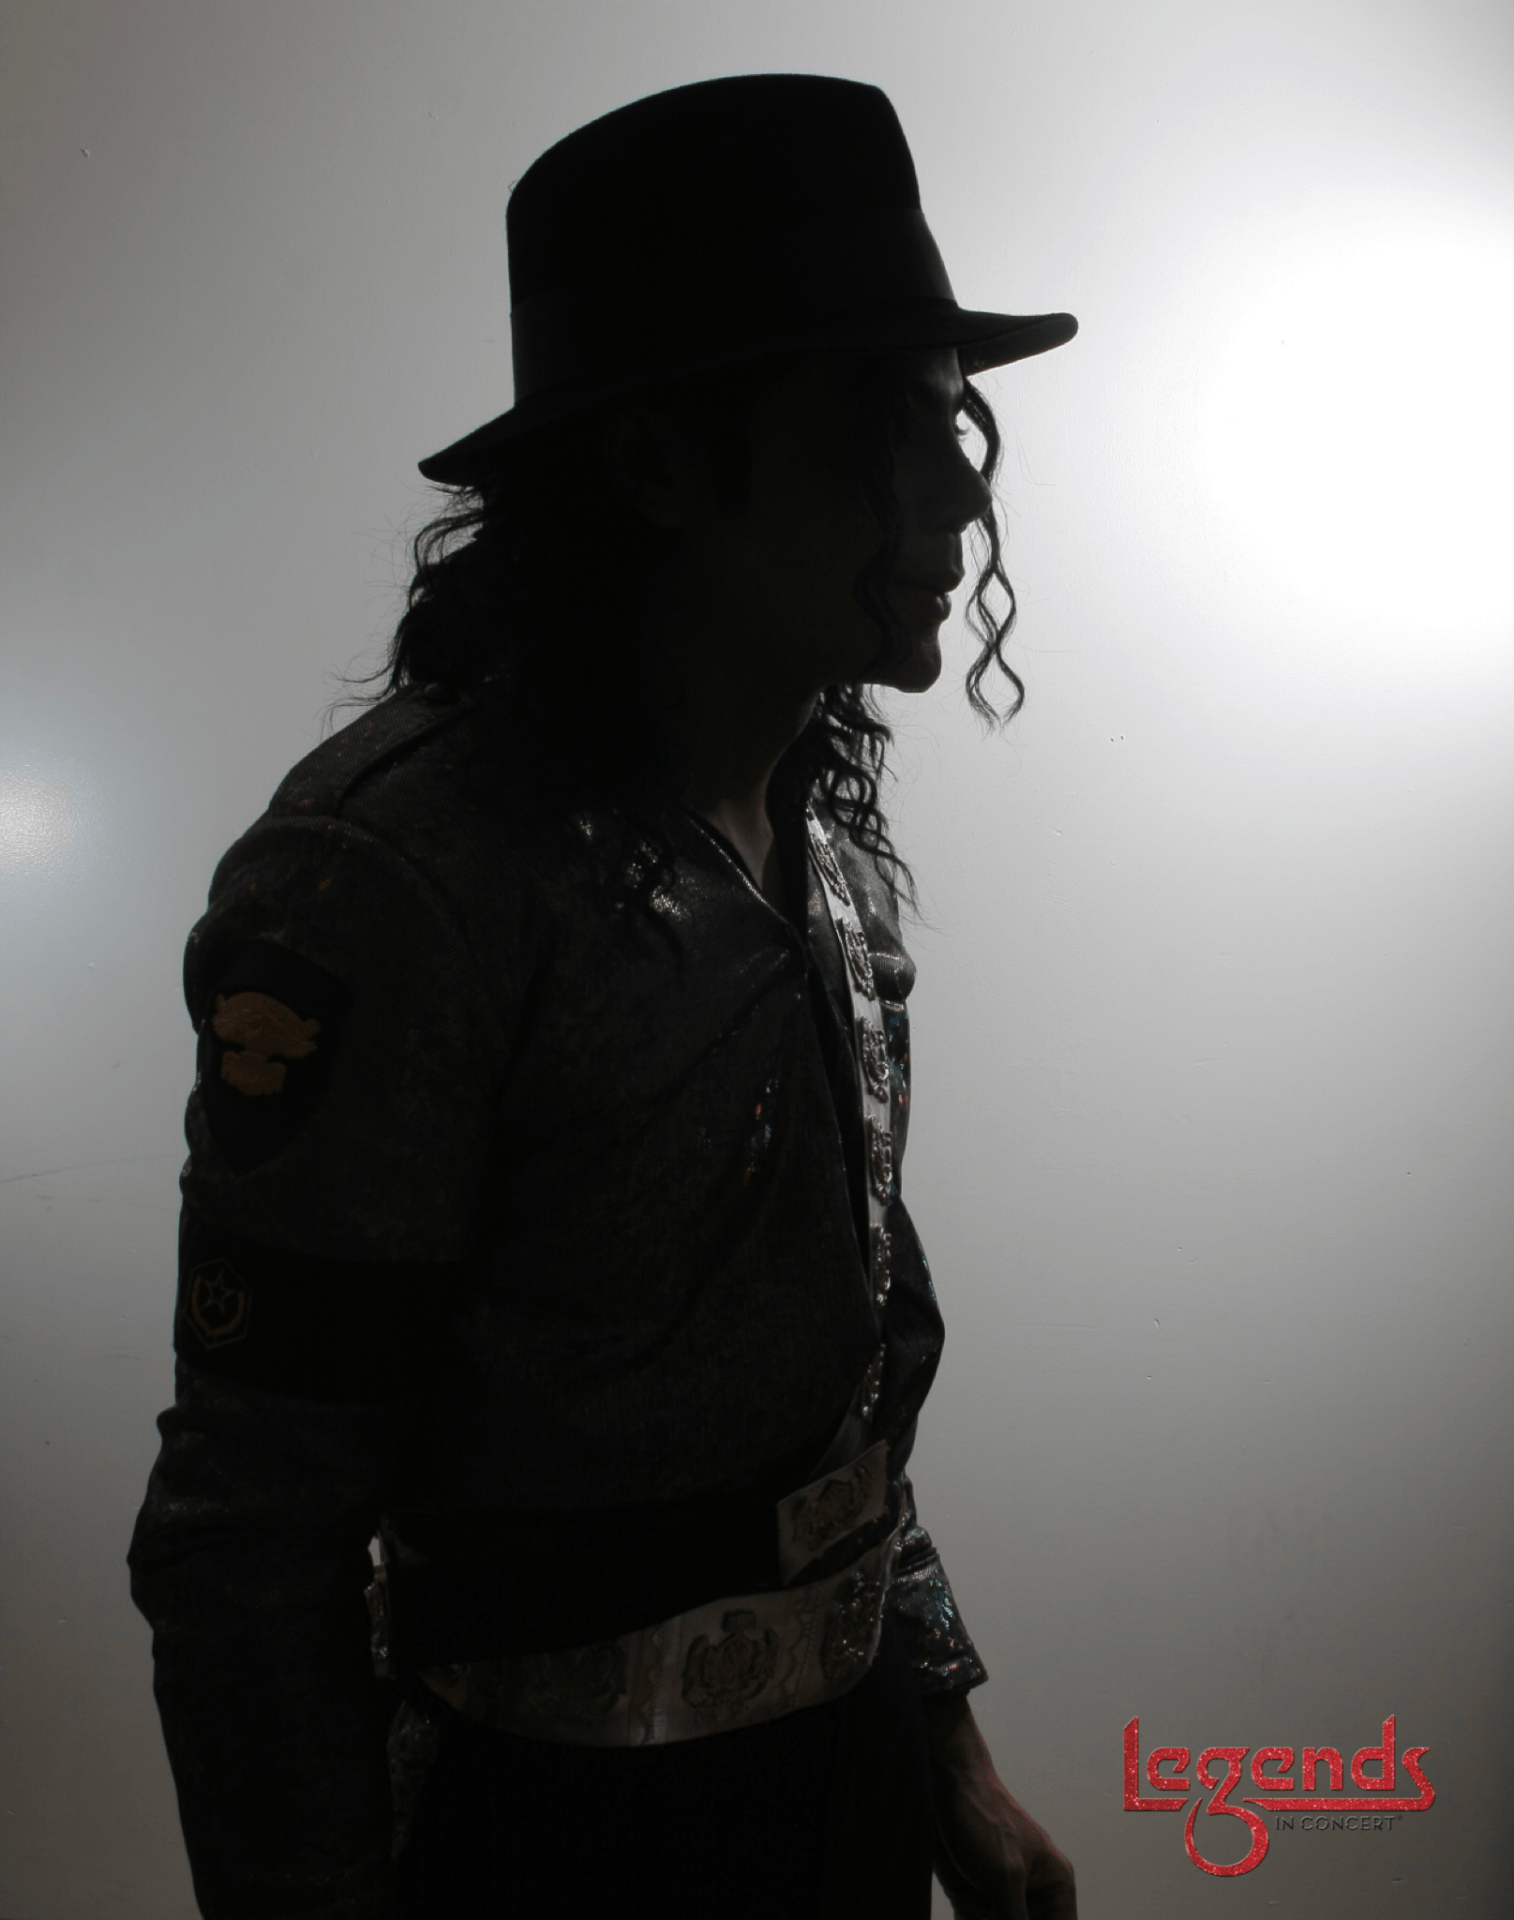 Legends in Concert Corey Melton as Michael Jackson